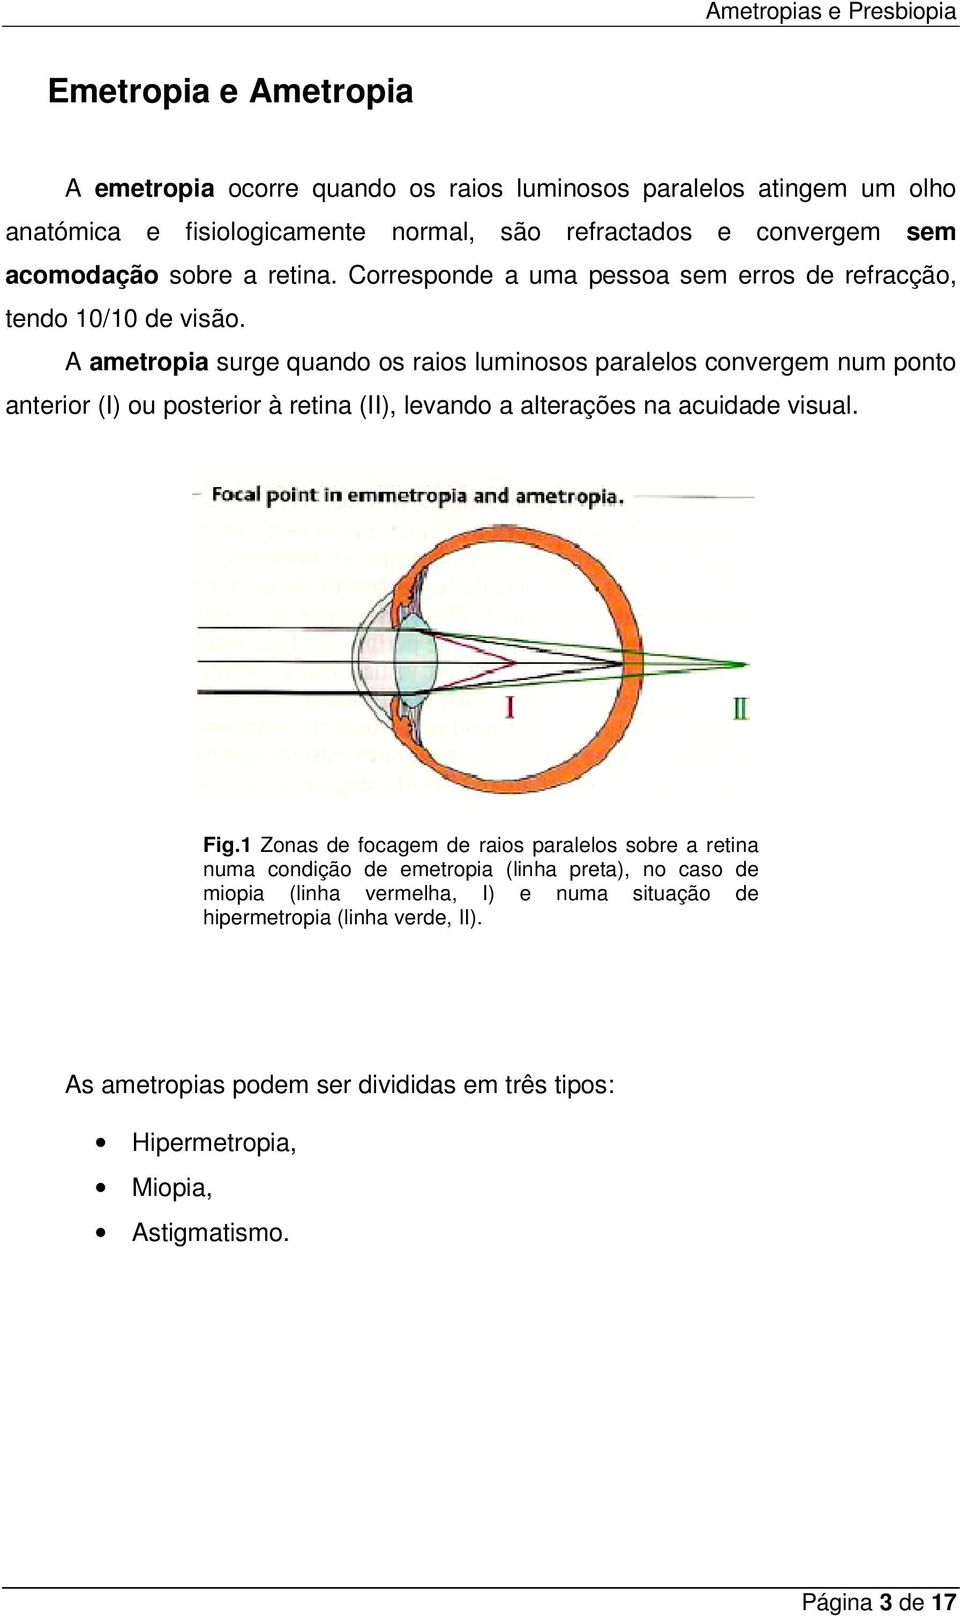 A ametropia surge quando os raios luminosos paralelos convergem num ponto anterior (I) ou posterior à retina (II), levando a alterações na acuidade visual. Fig.